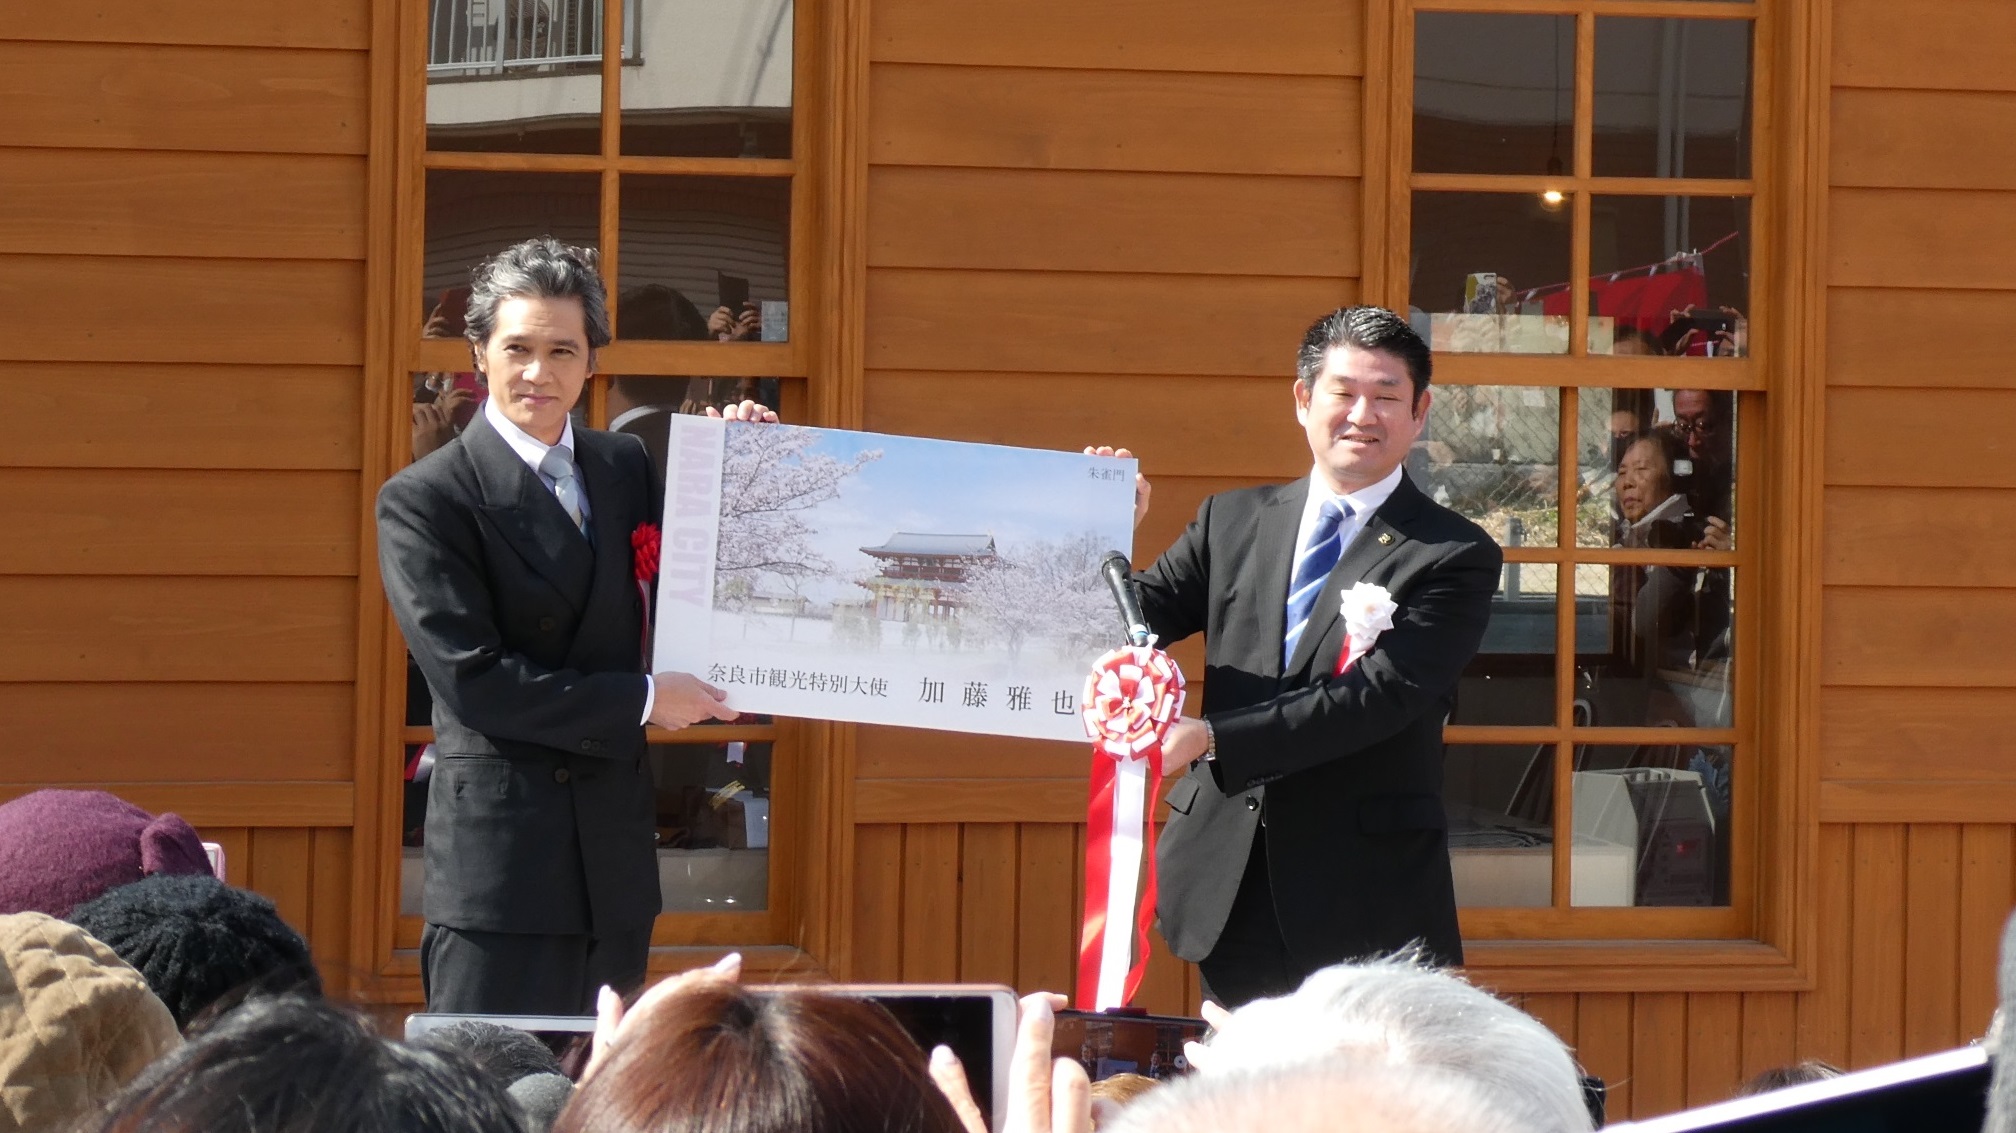 奈良市京終駅観光案内所開所式典、奈良市観光特別大使委嘱式の画像2